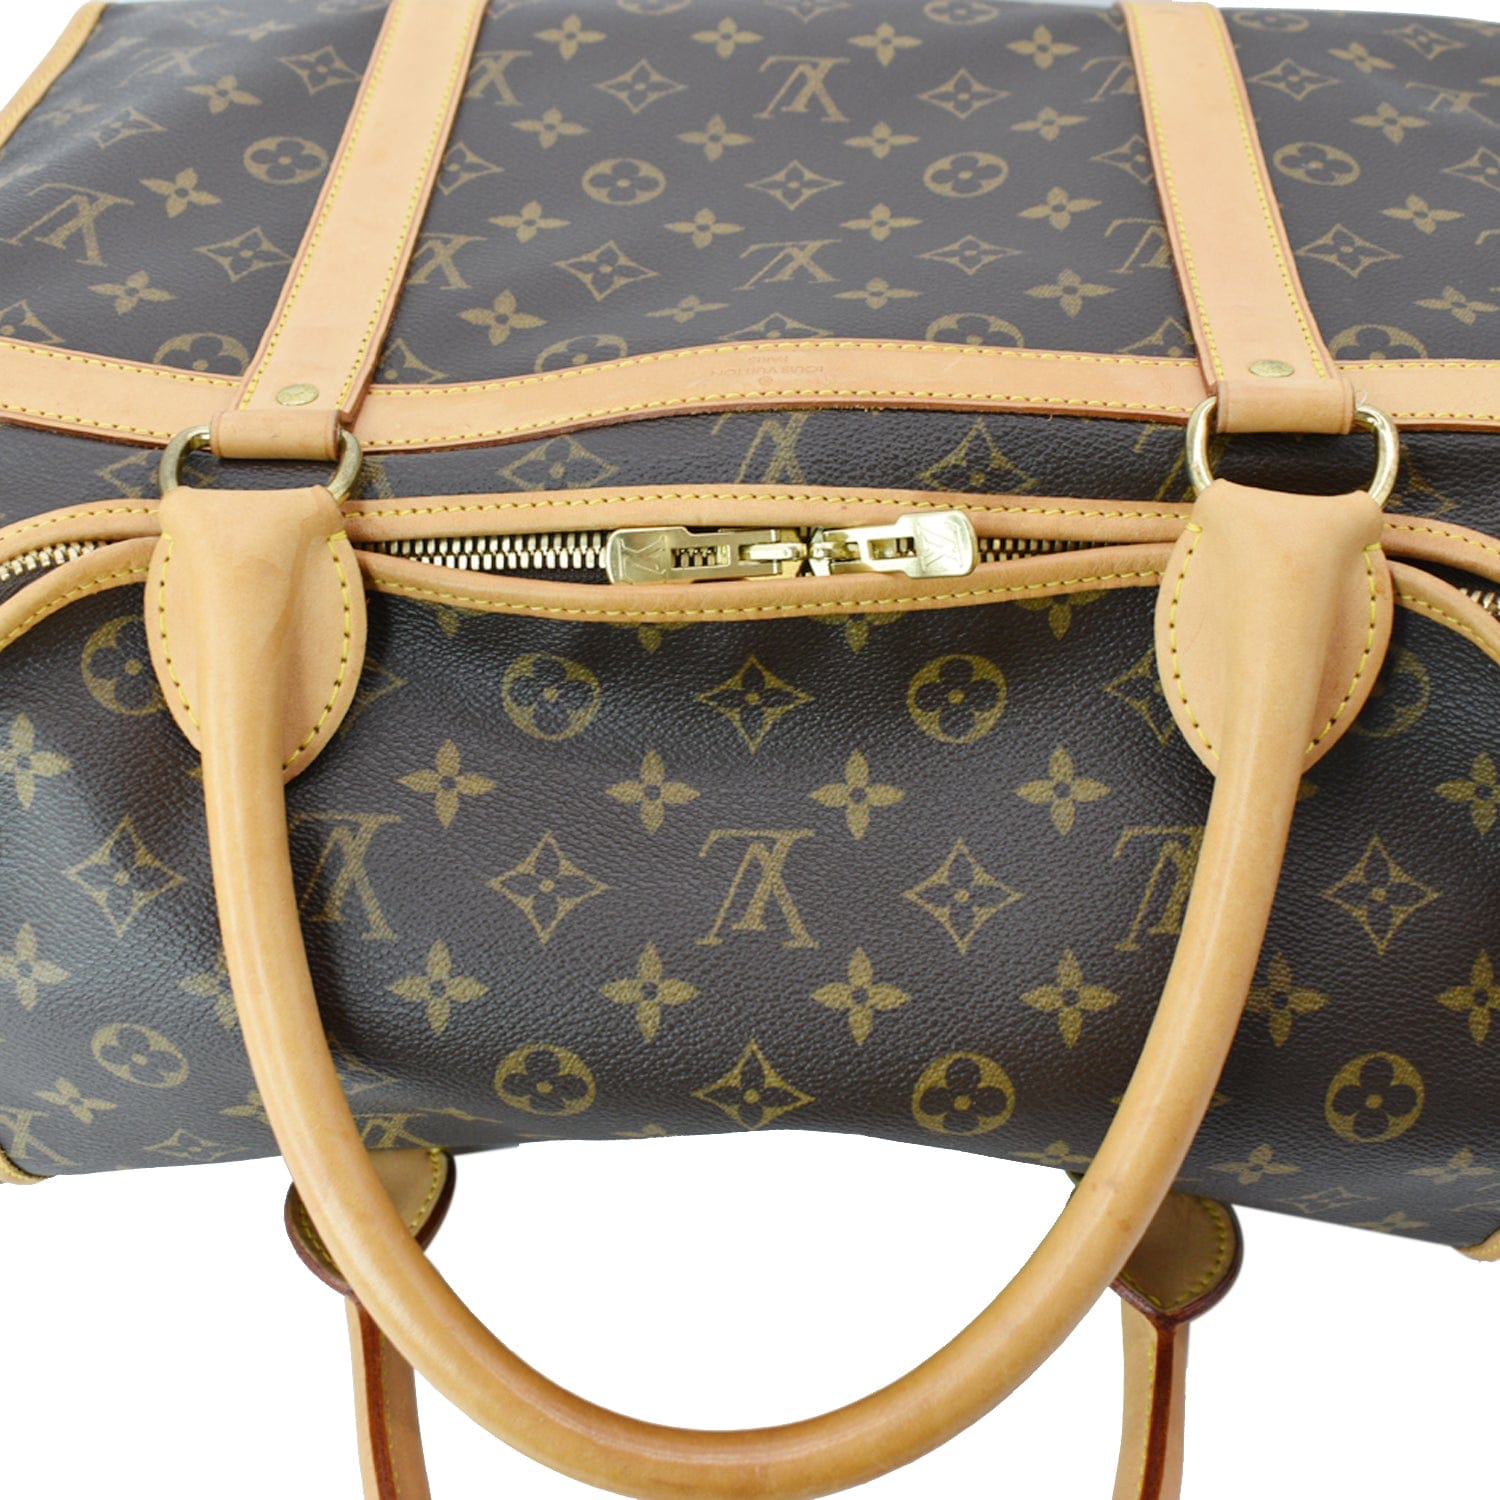 Authentic Louis Vuitton Dog Bag Monogram Carrier Canvas Brown